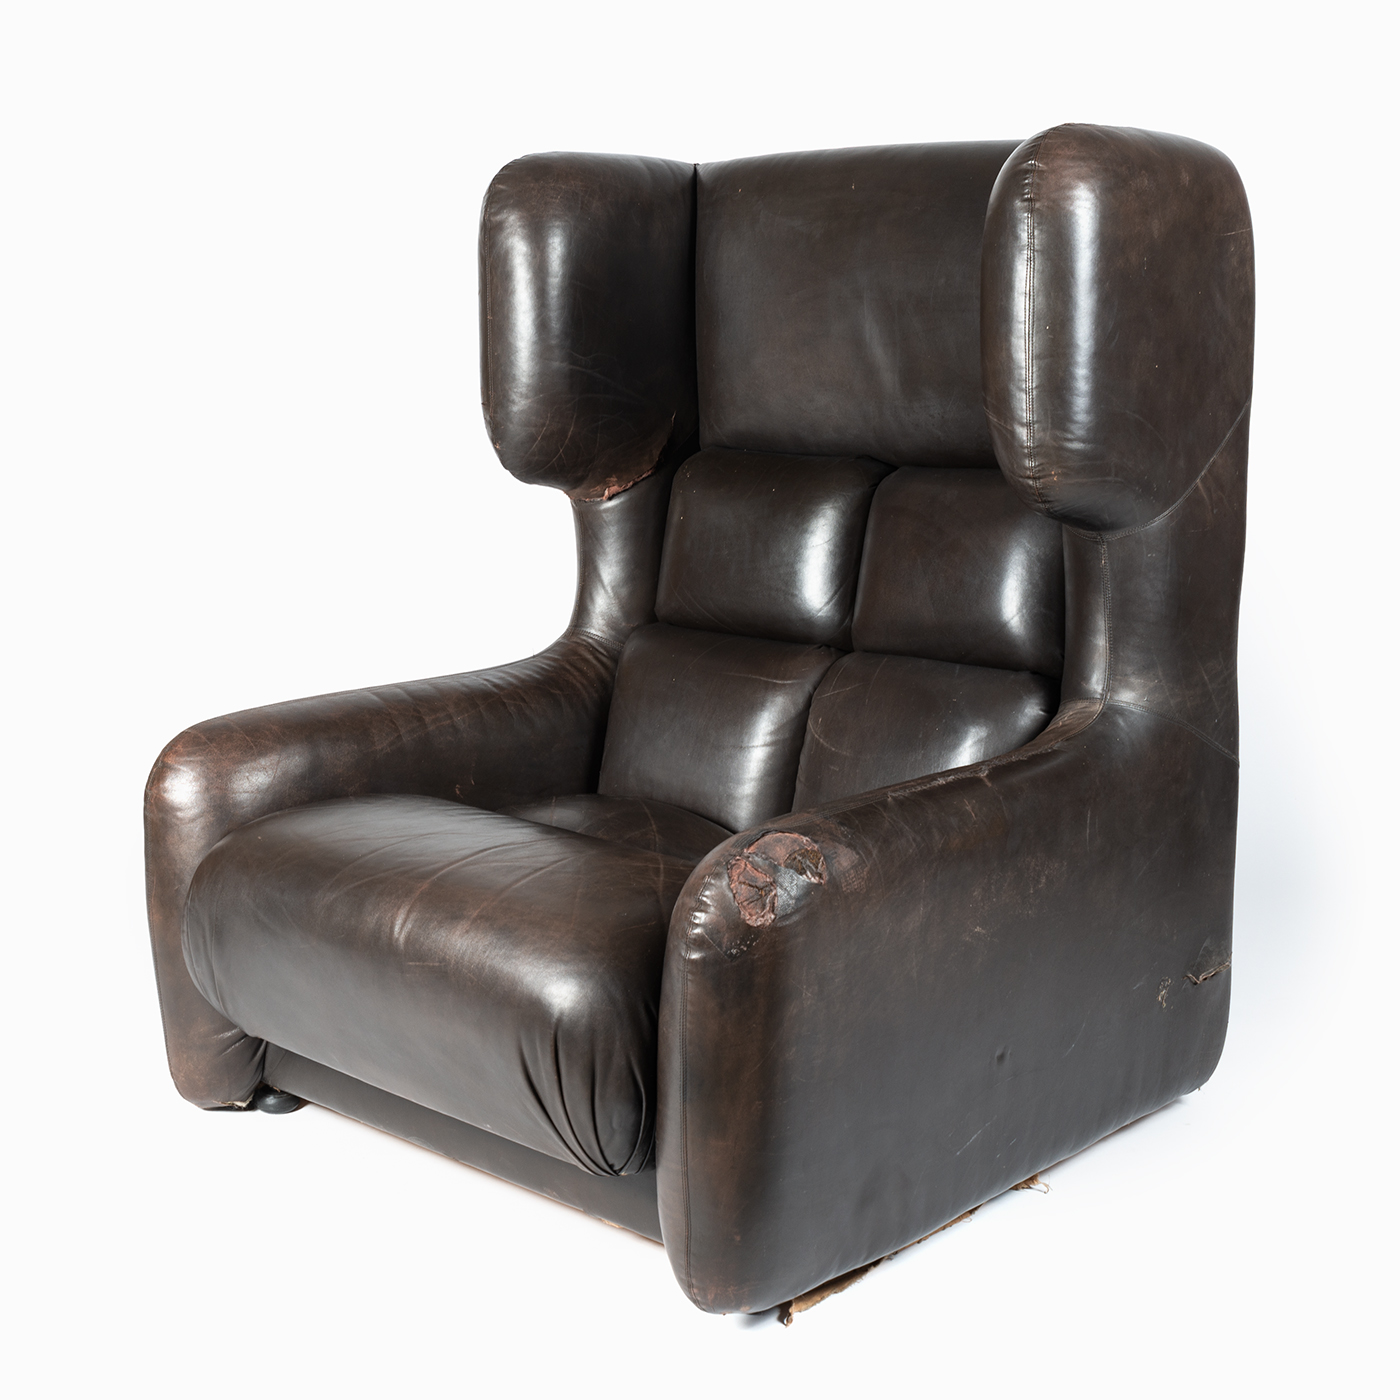 Leather armchair from Hotel Praha, designed by Zbyněk Hřivnáč